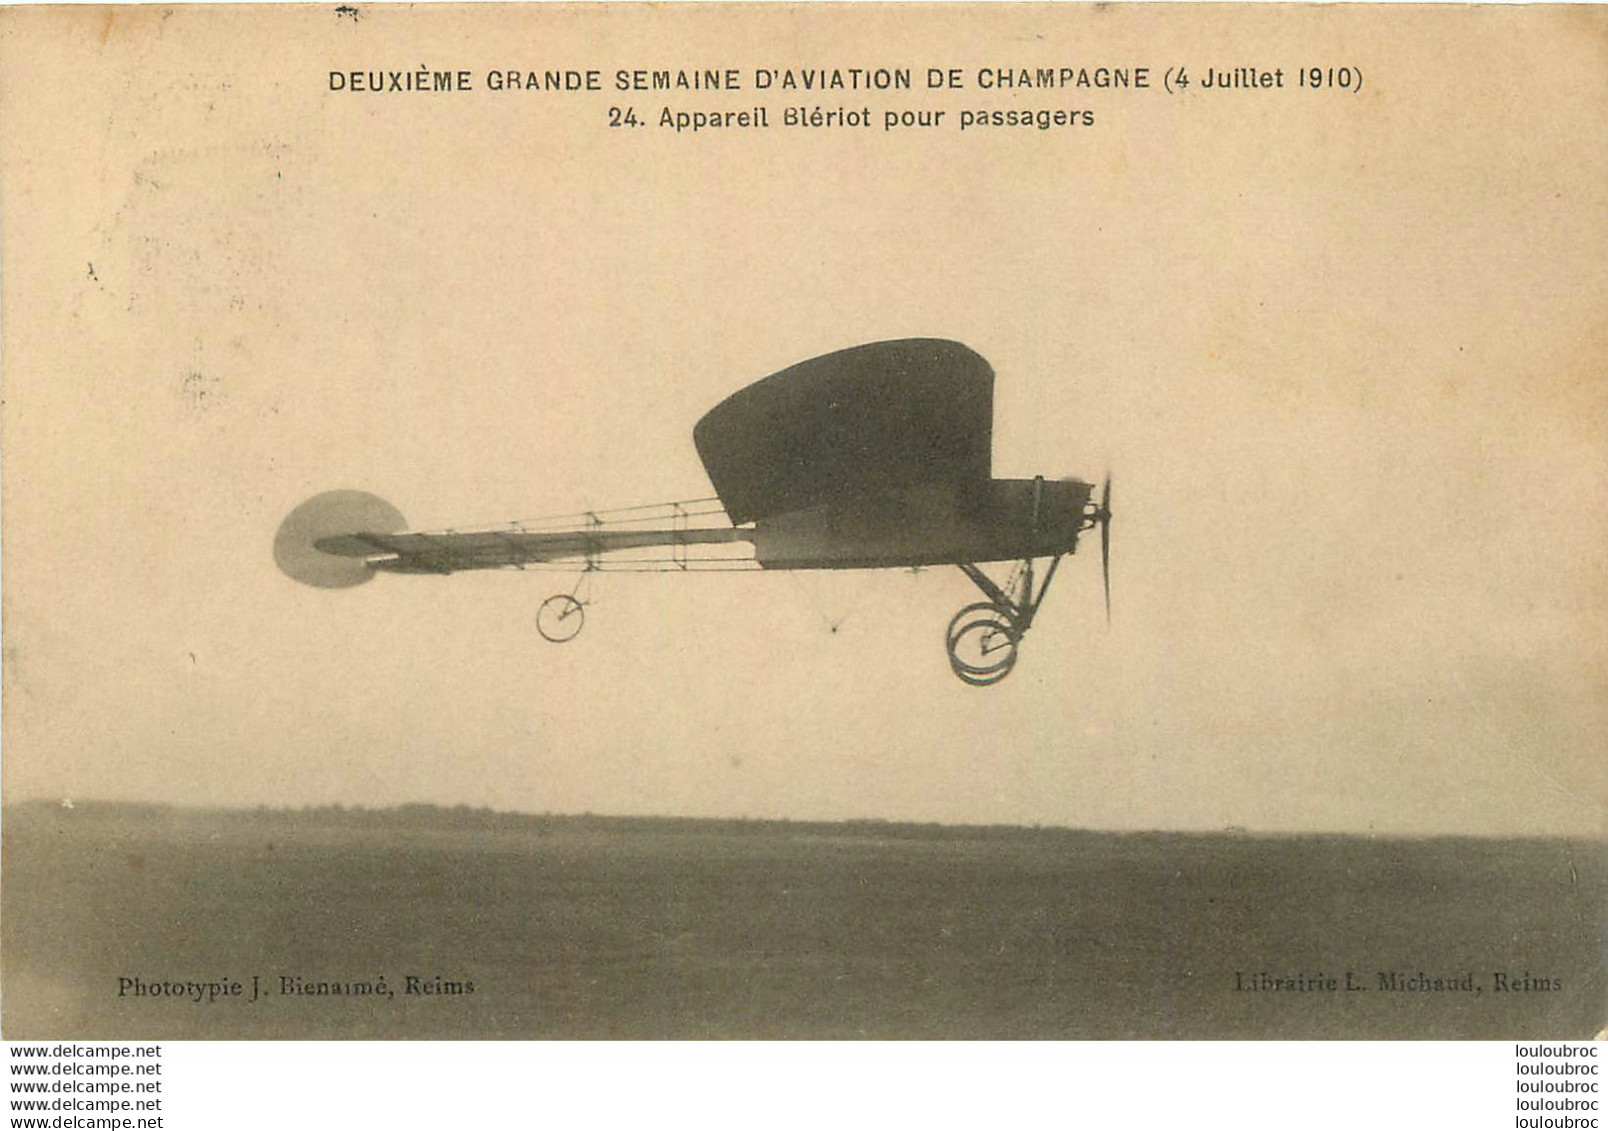 DEUXIEME GRANDE SEMAINE D'AVIATION DE CHAMPAGNE JUILLET 1910 APPAREIL BLERIOT POUR PASSAGERS - Demonstraties